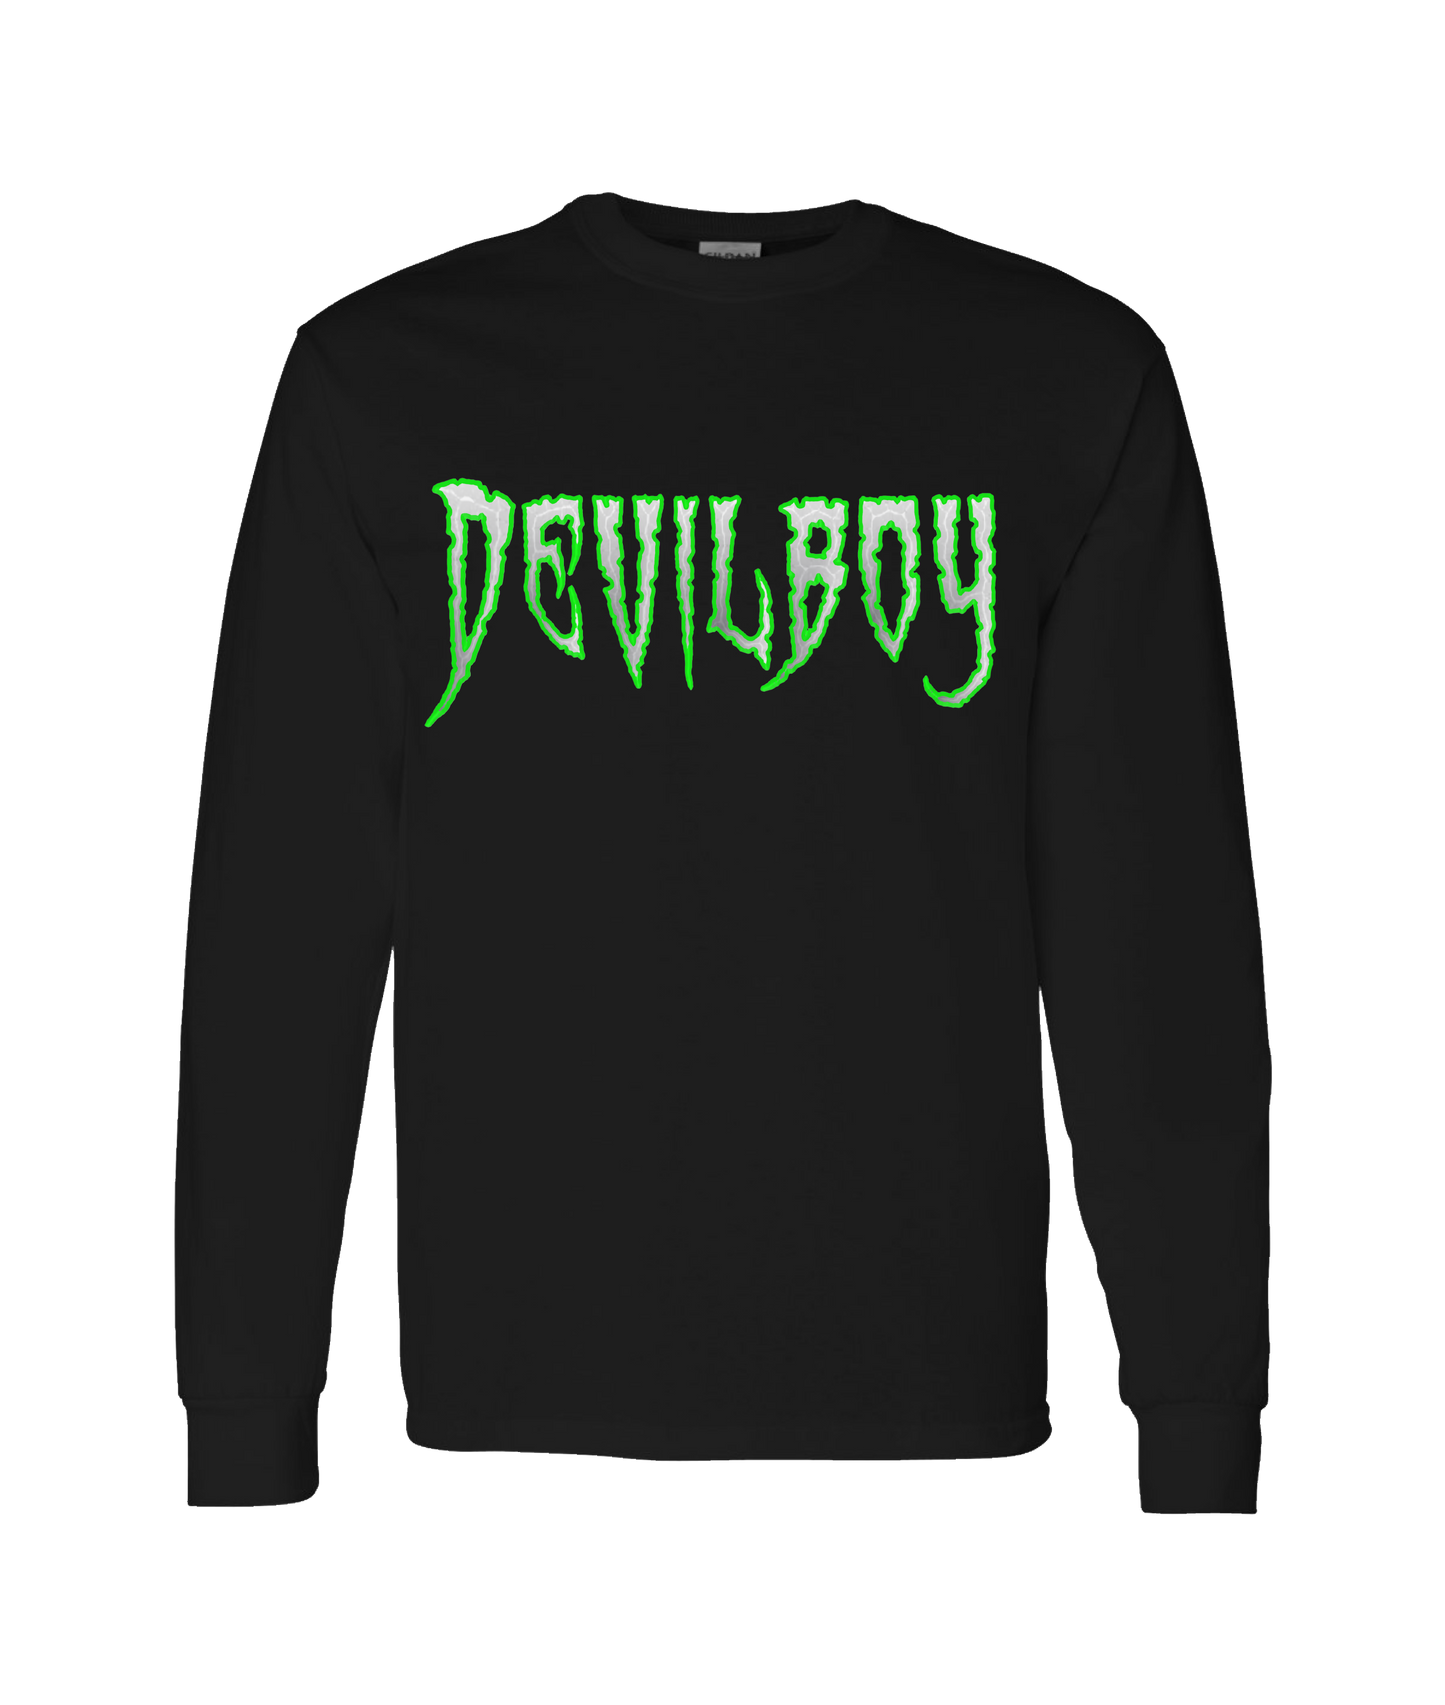 DEVILBOY - DESIGN 1 - Black Long Sleeve T